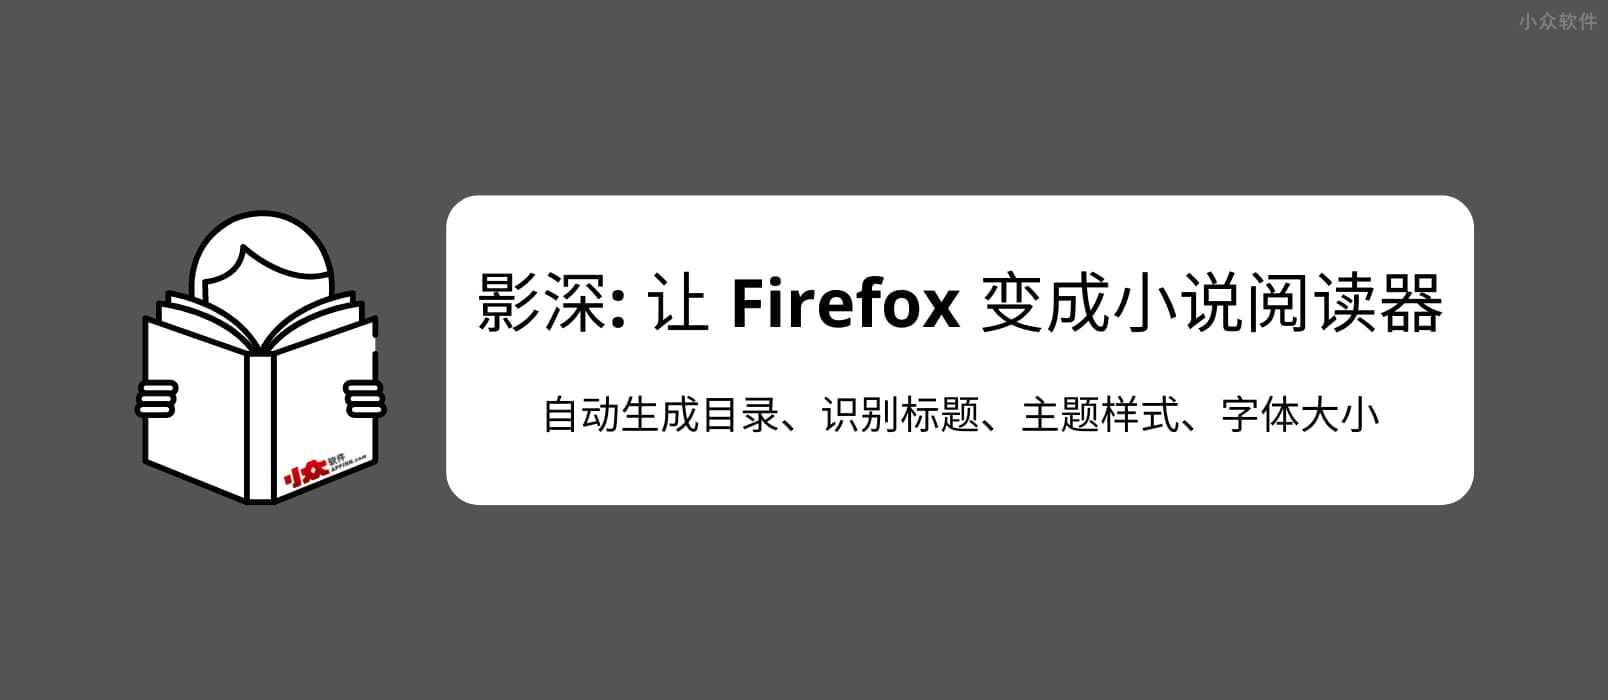 影深 – 让 Firefox 变成小说阅读器，为 .TXT 文件自动生成目录、识别标题、主题样式。效果非常赞，书虫必备